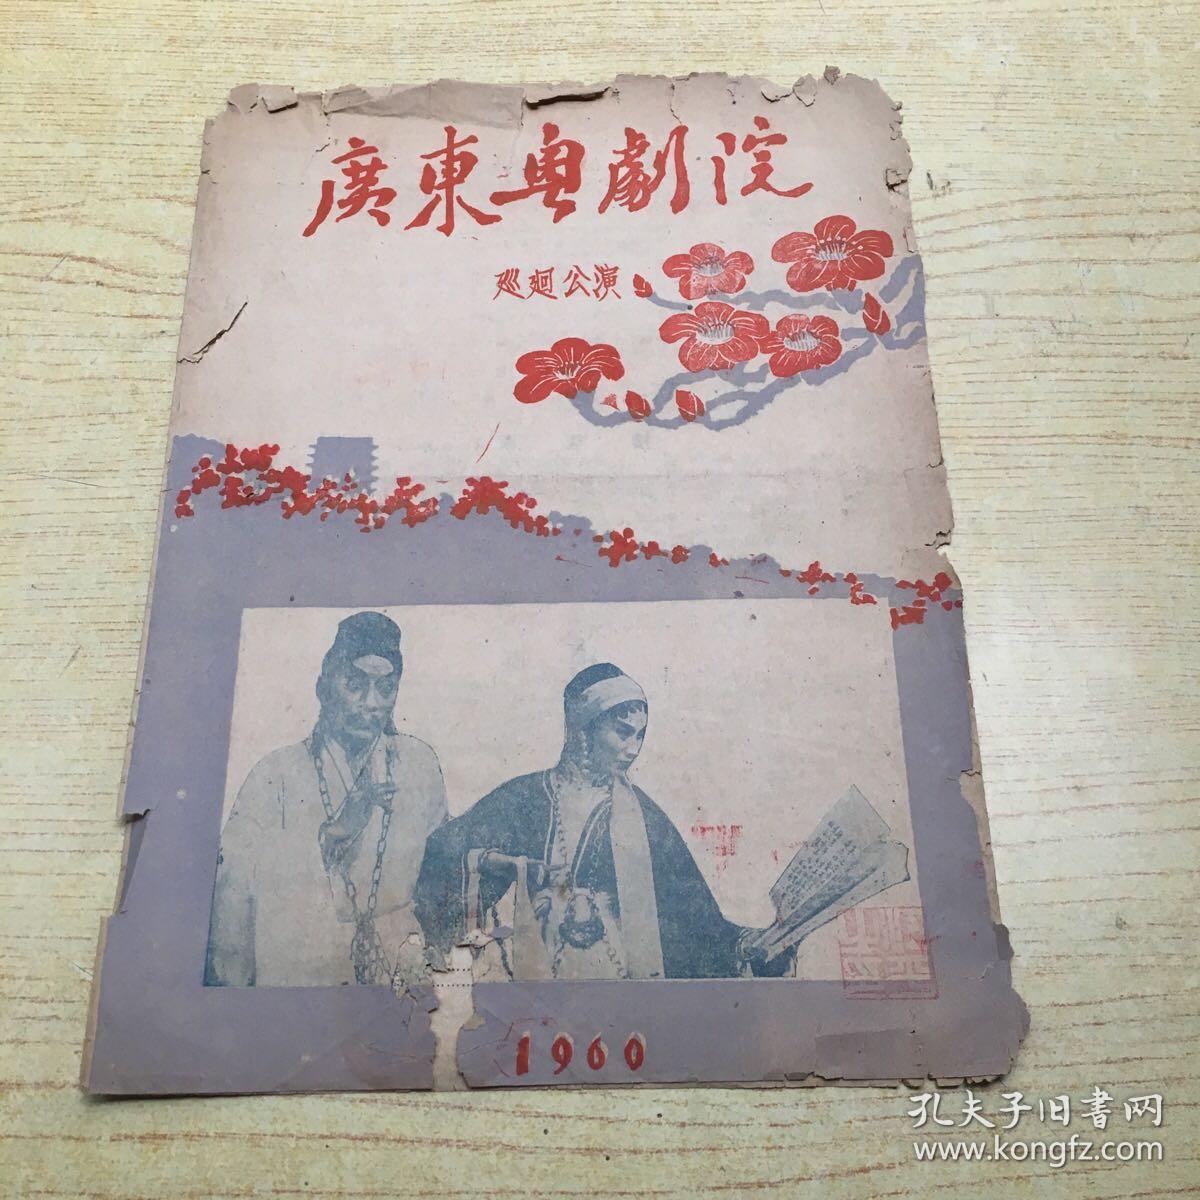 广东粤剧院巡回公演*1960年节目单**16开【H】